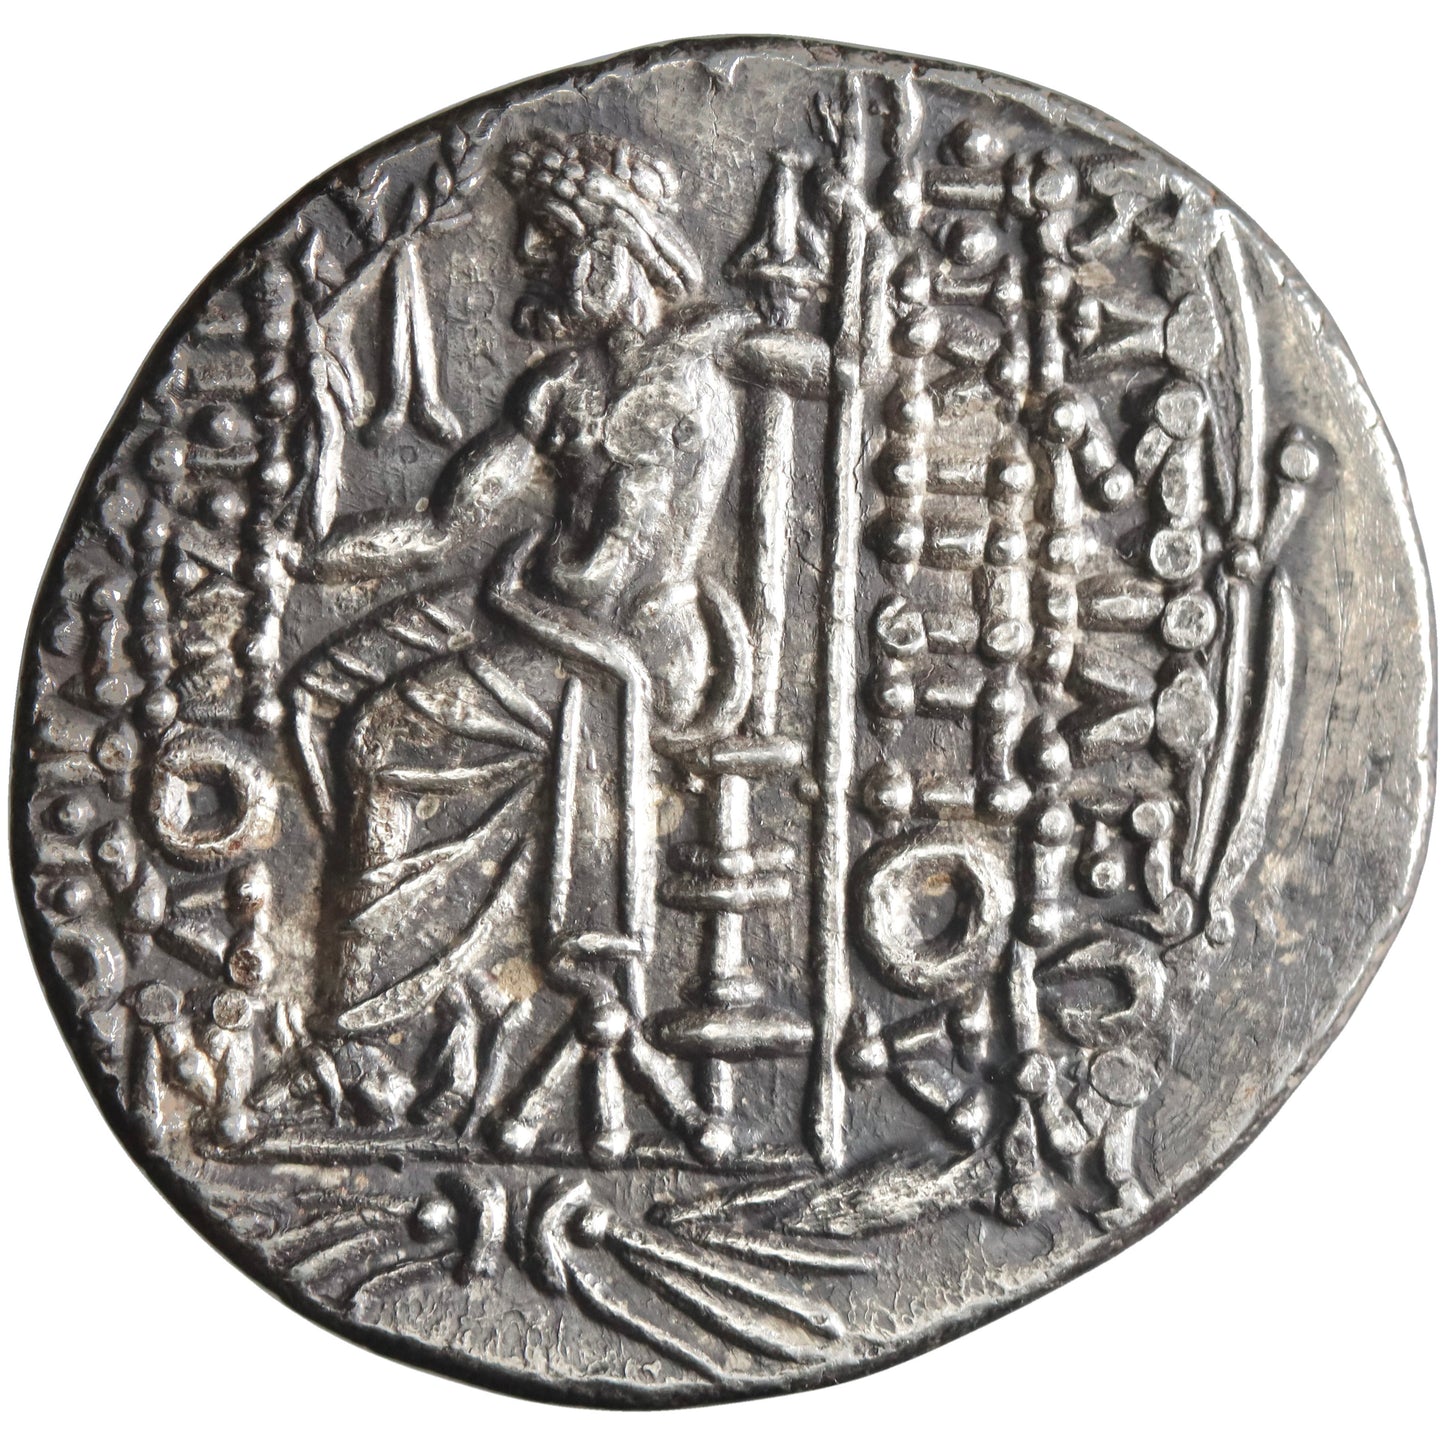 Seleucid, Philip I Philadelphos, silver tetradrachm, mint in Cilicia, 94-87 BCE, Zeus